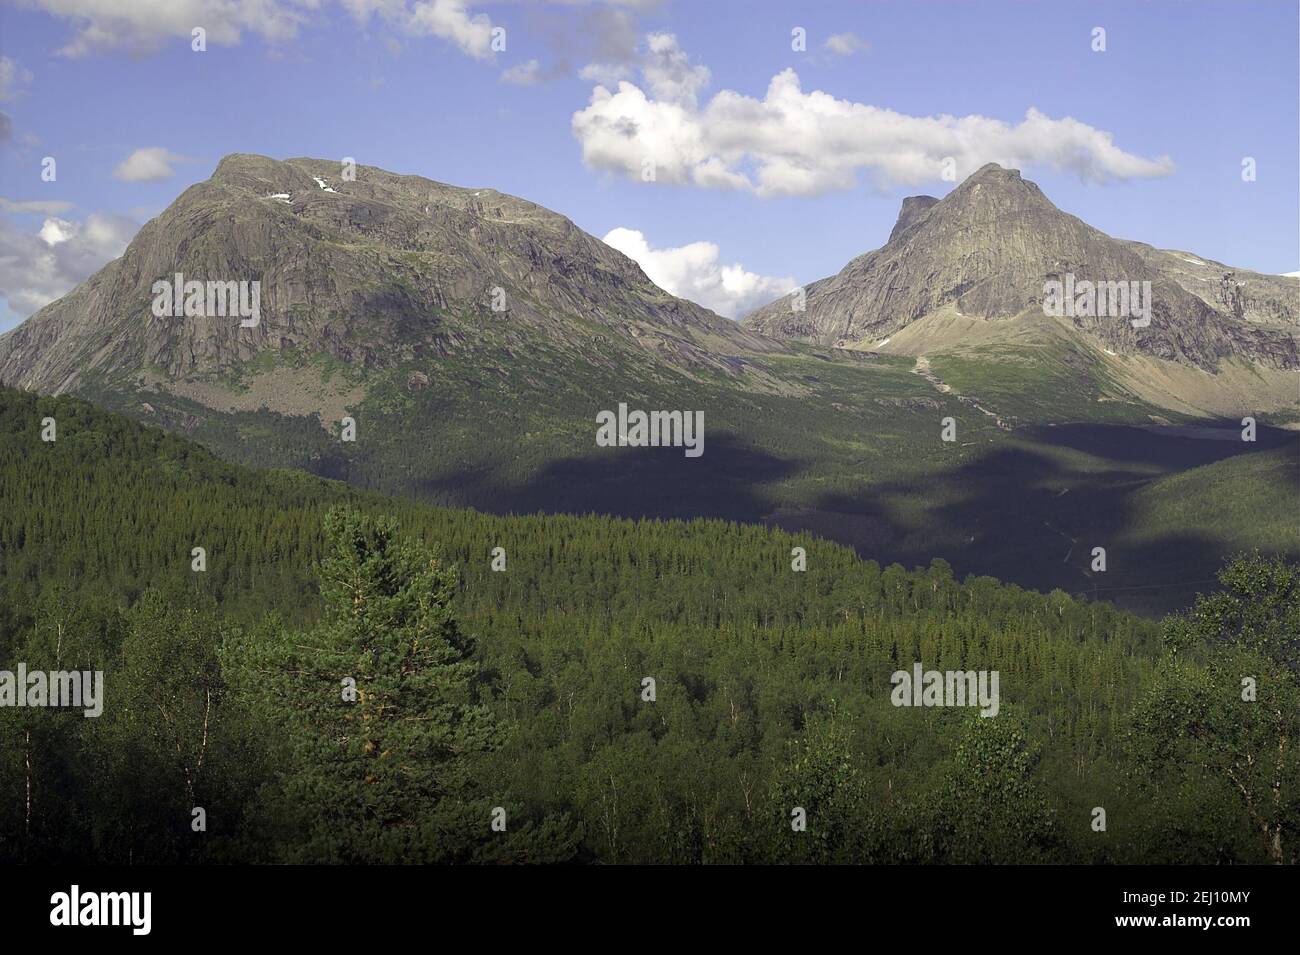 Norvegia, Norvegia; Montagne Rocciose - un tipico paesaggio estivo nella Norvegia settentrionale dietro il Circolo polare Artico. Abete rosso sulle pendici; świerkowy las Foto Stock